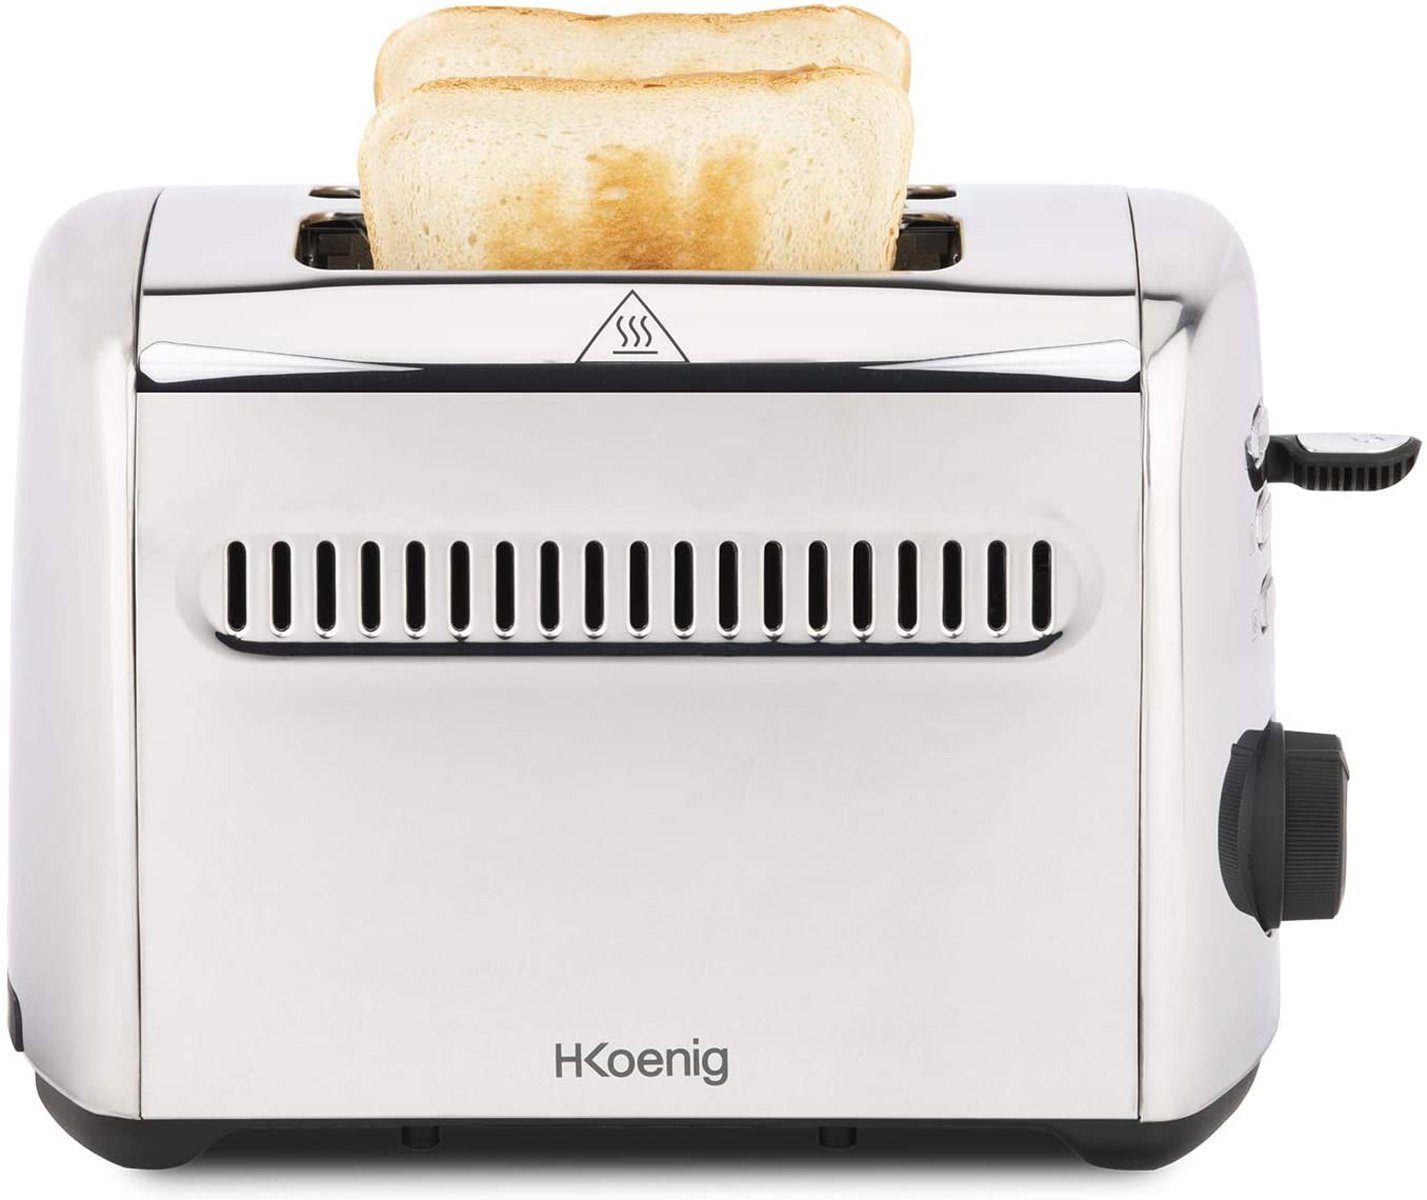 H.Koenig 950 W 2 für Scheiben Toaster Toast, TOS9